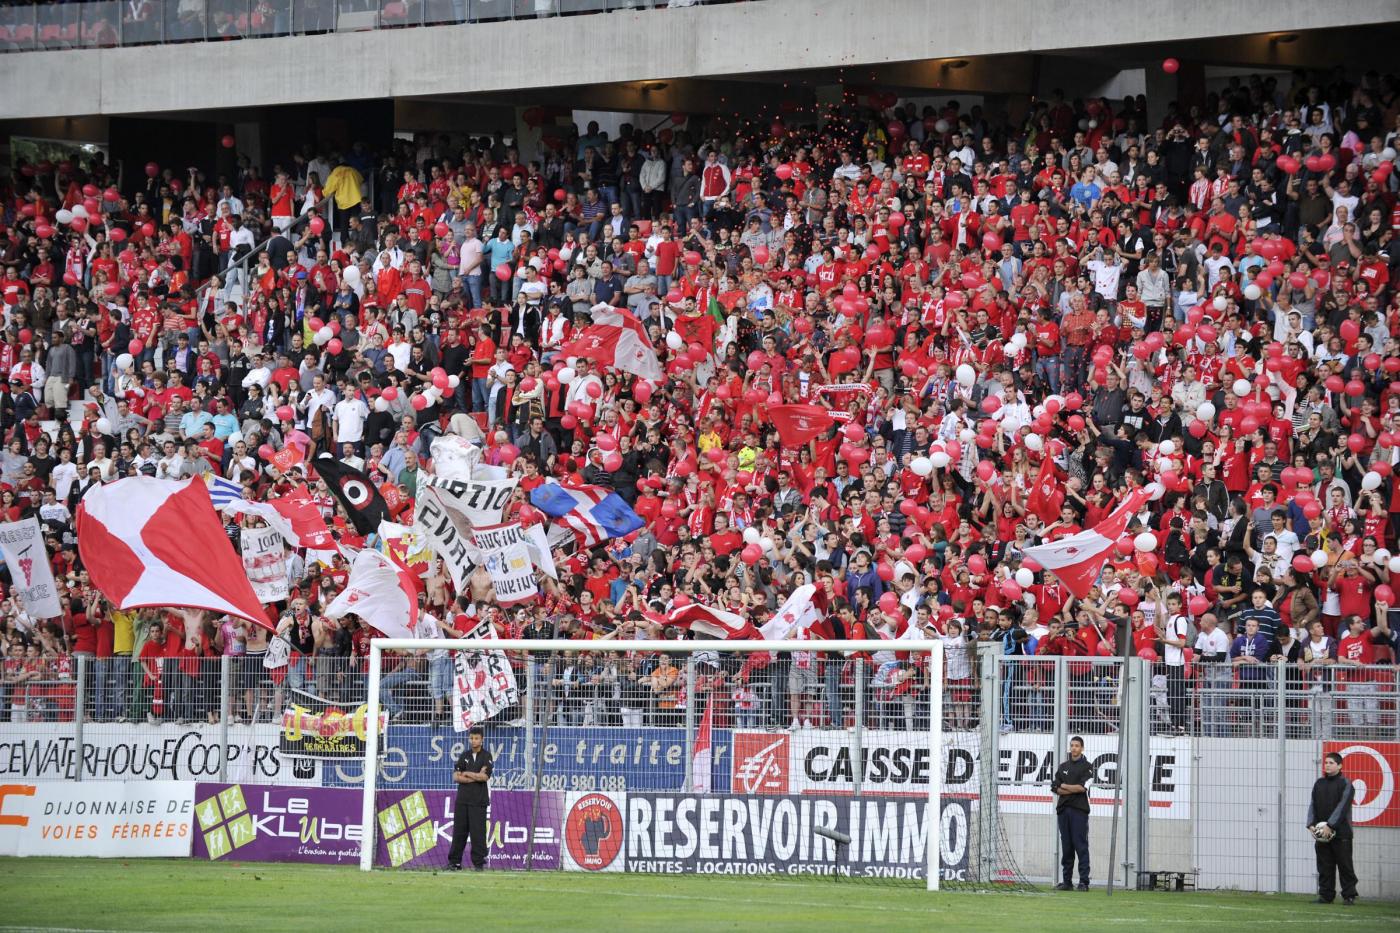 Rennes-Guingamp 12 maggio: si gioca per la 36 esima giornata della Serie A francese. Gli ospiti hanno grande sete di punti.